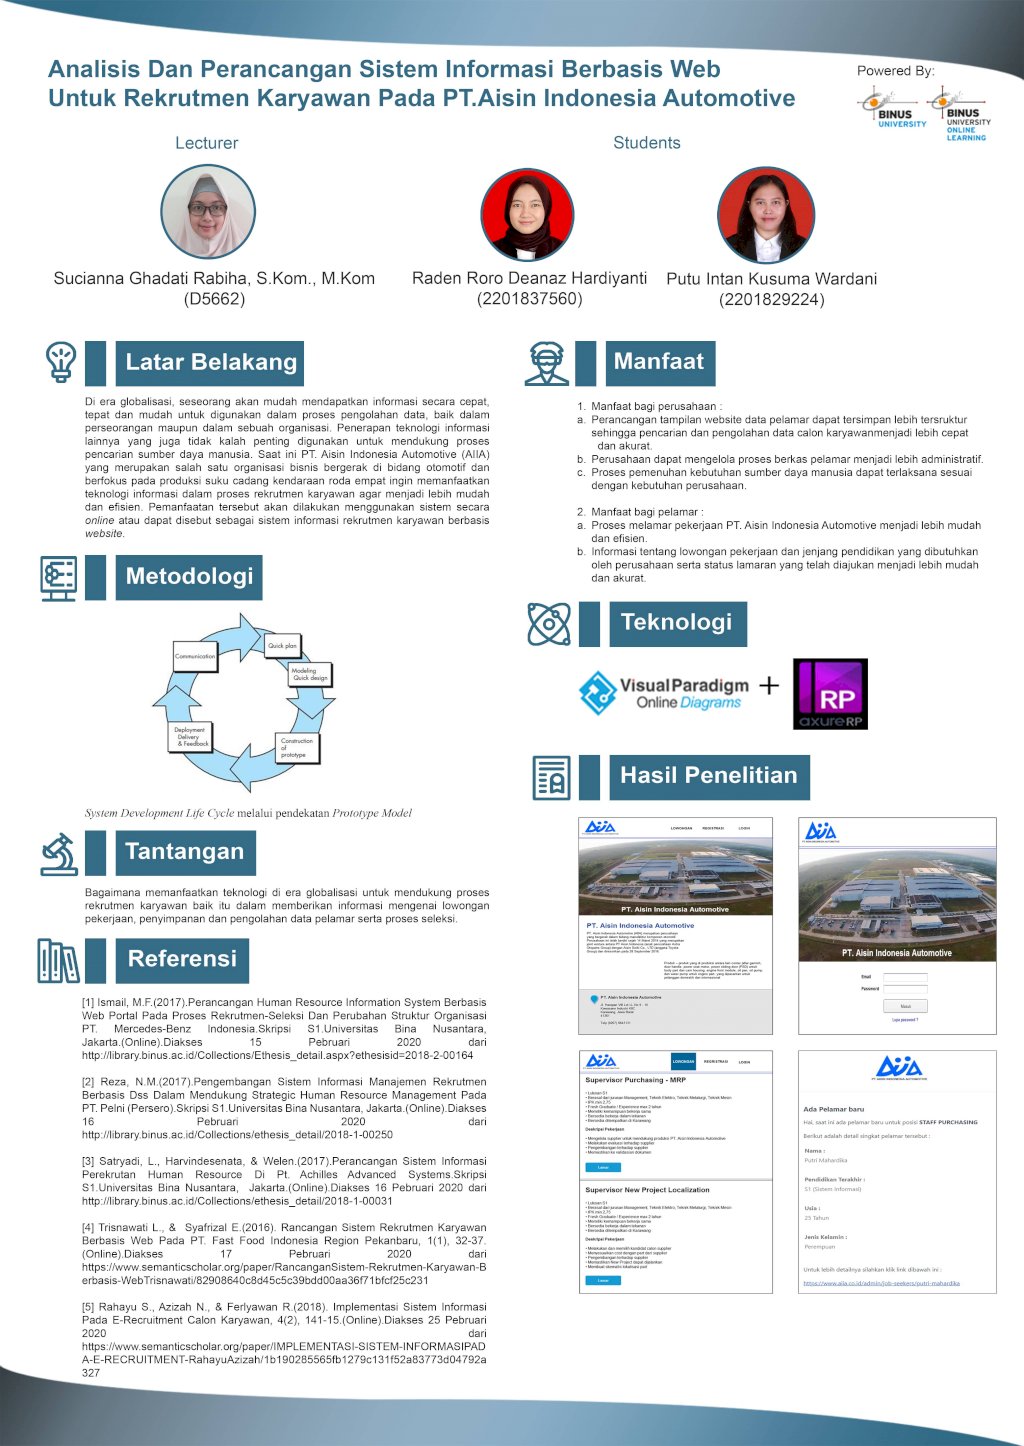 Analisis dan Perancangan Sistem Informasi Berbasis Website Untuk Rekrutmen Karyawan Pada PT. Aisin Indonesia Automotive